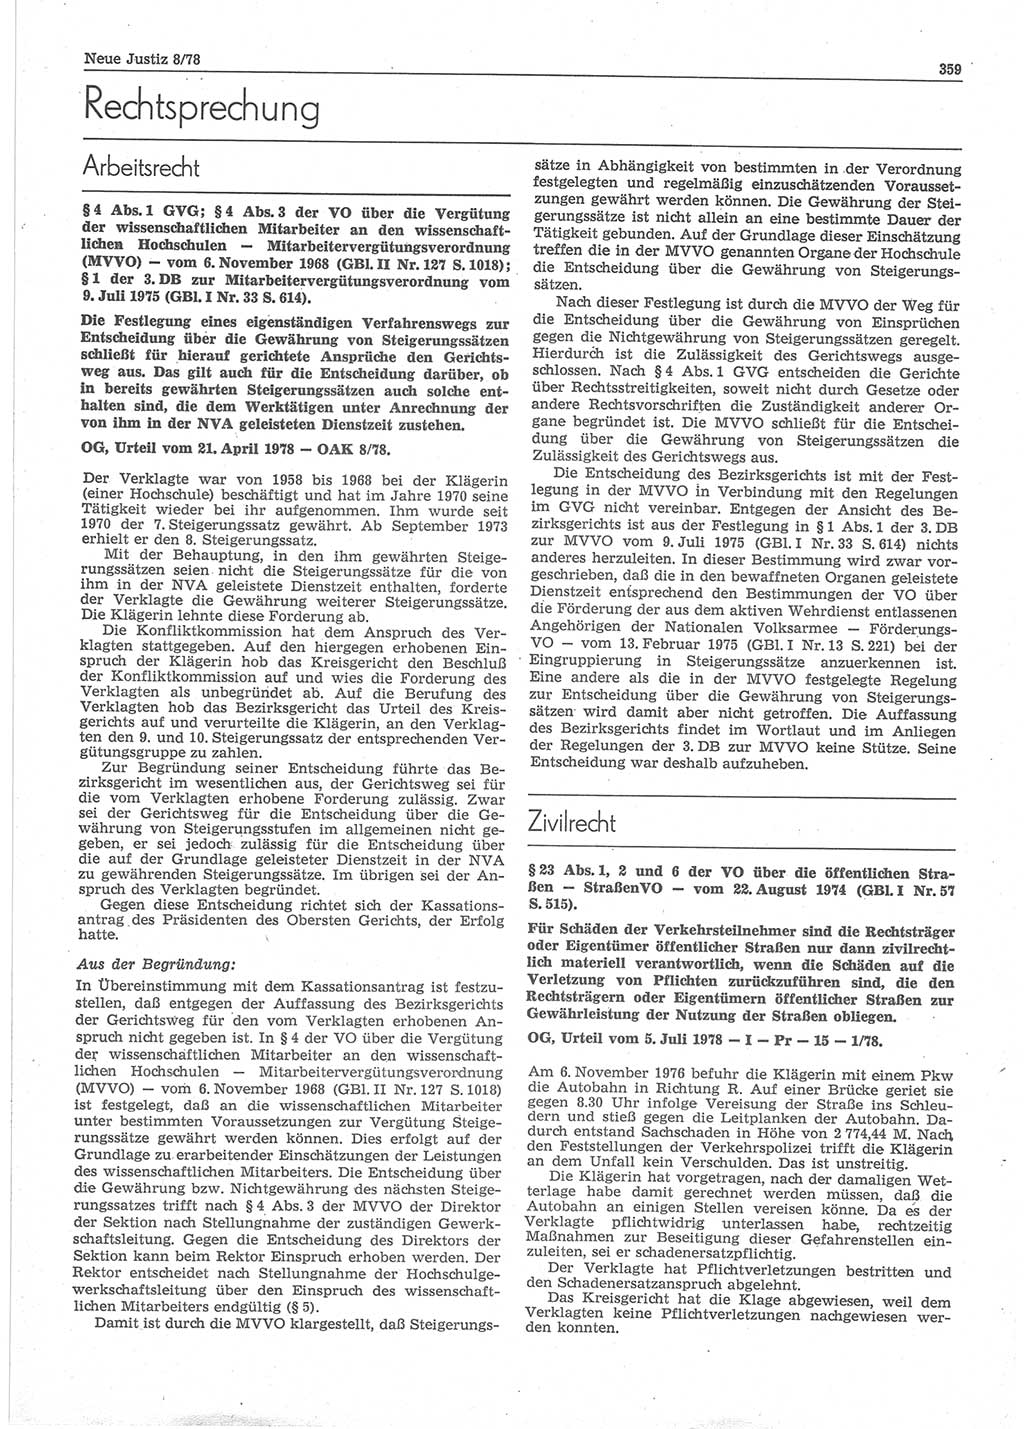 Neue Justiz (NJ), Zeitschrift für sozialistisches Recht und Gesetzlichkeit [Deutsche Demokratische Republik (DDR)], 32. Jahrgang 1978, Seite 359 (NJ DDR 1978, S. 359)